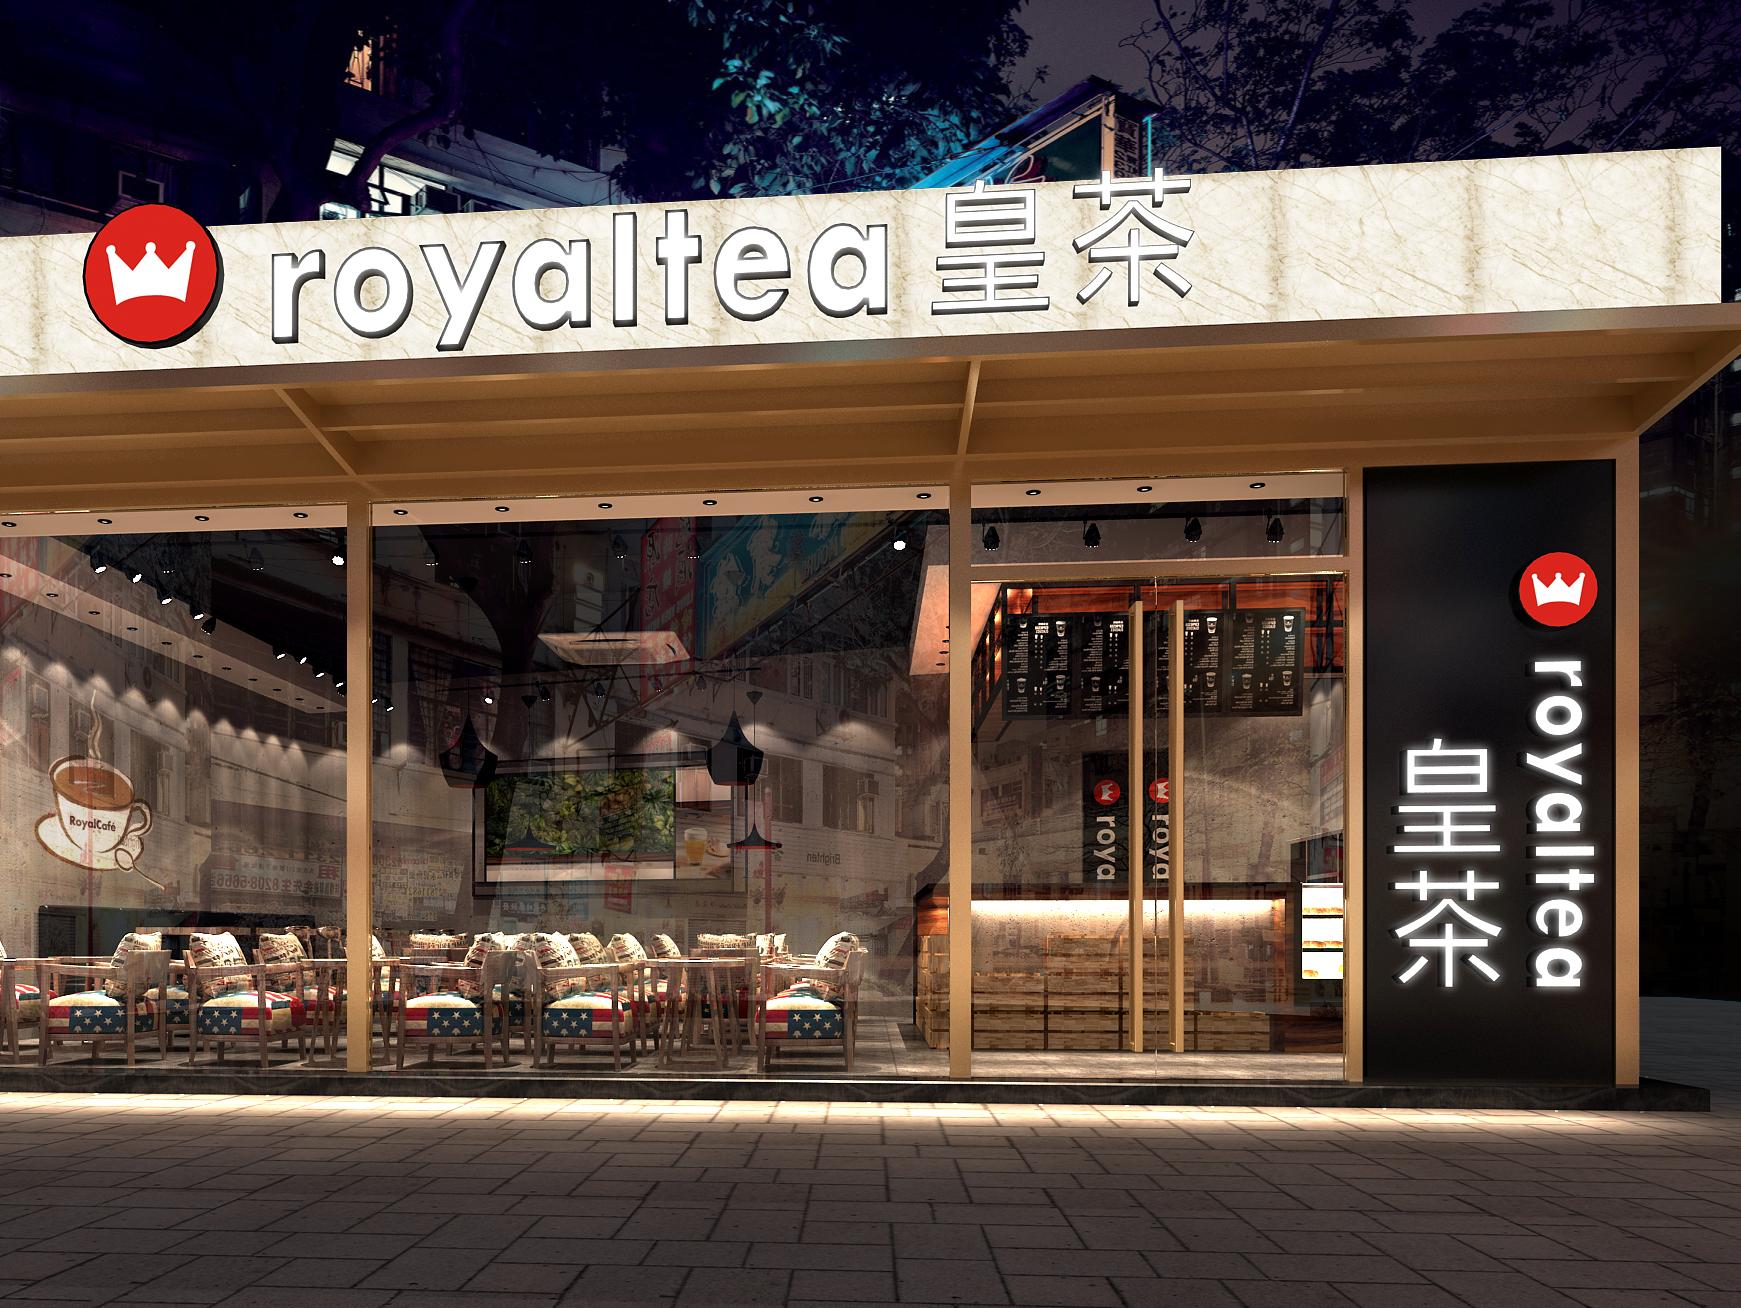 五福城的「 Royaltea 皇茶 」为您展现真正的皇家品质。 | WoWJohor